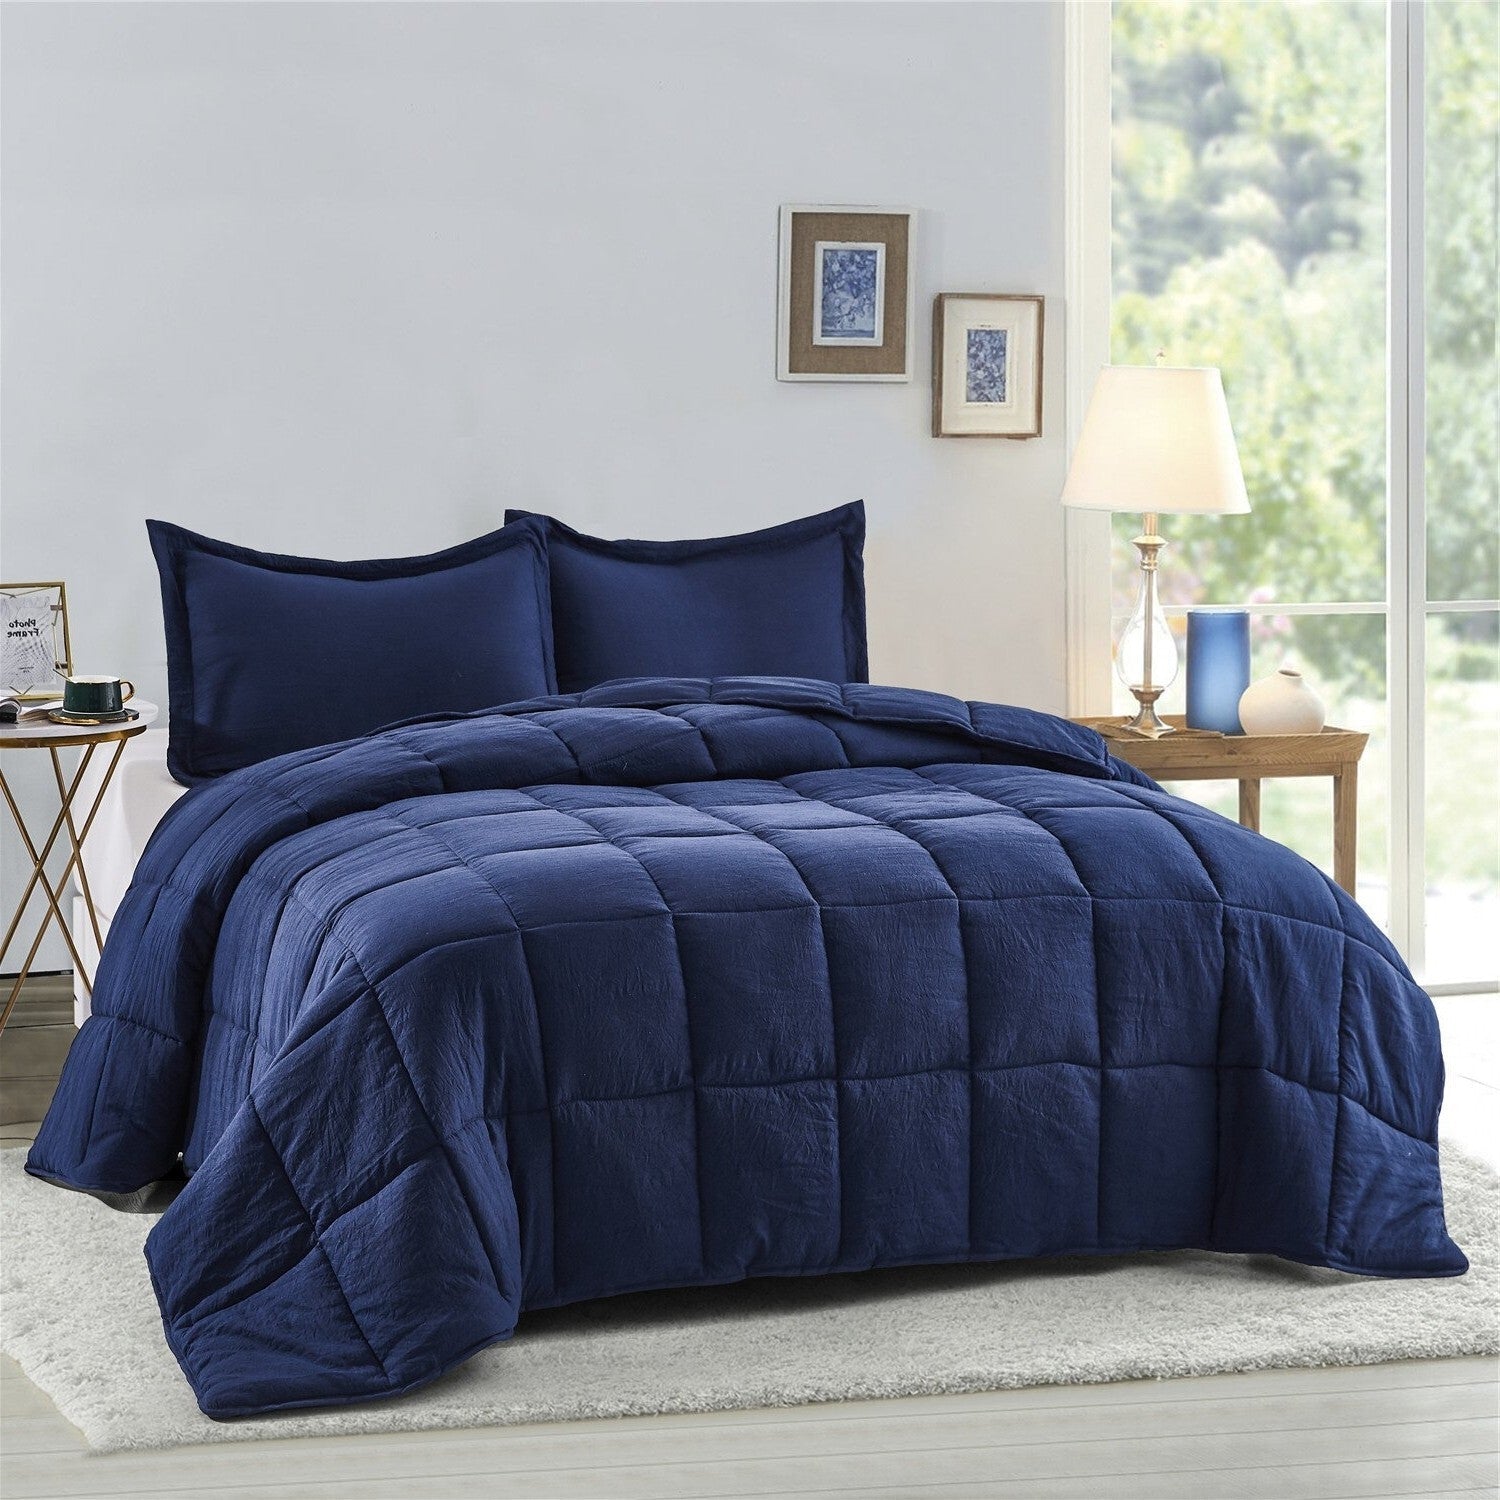 Bedroom > Comforters And Sets - Twin Size Navy 3 Piece Microfiber Reversible Comforter Set